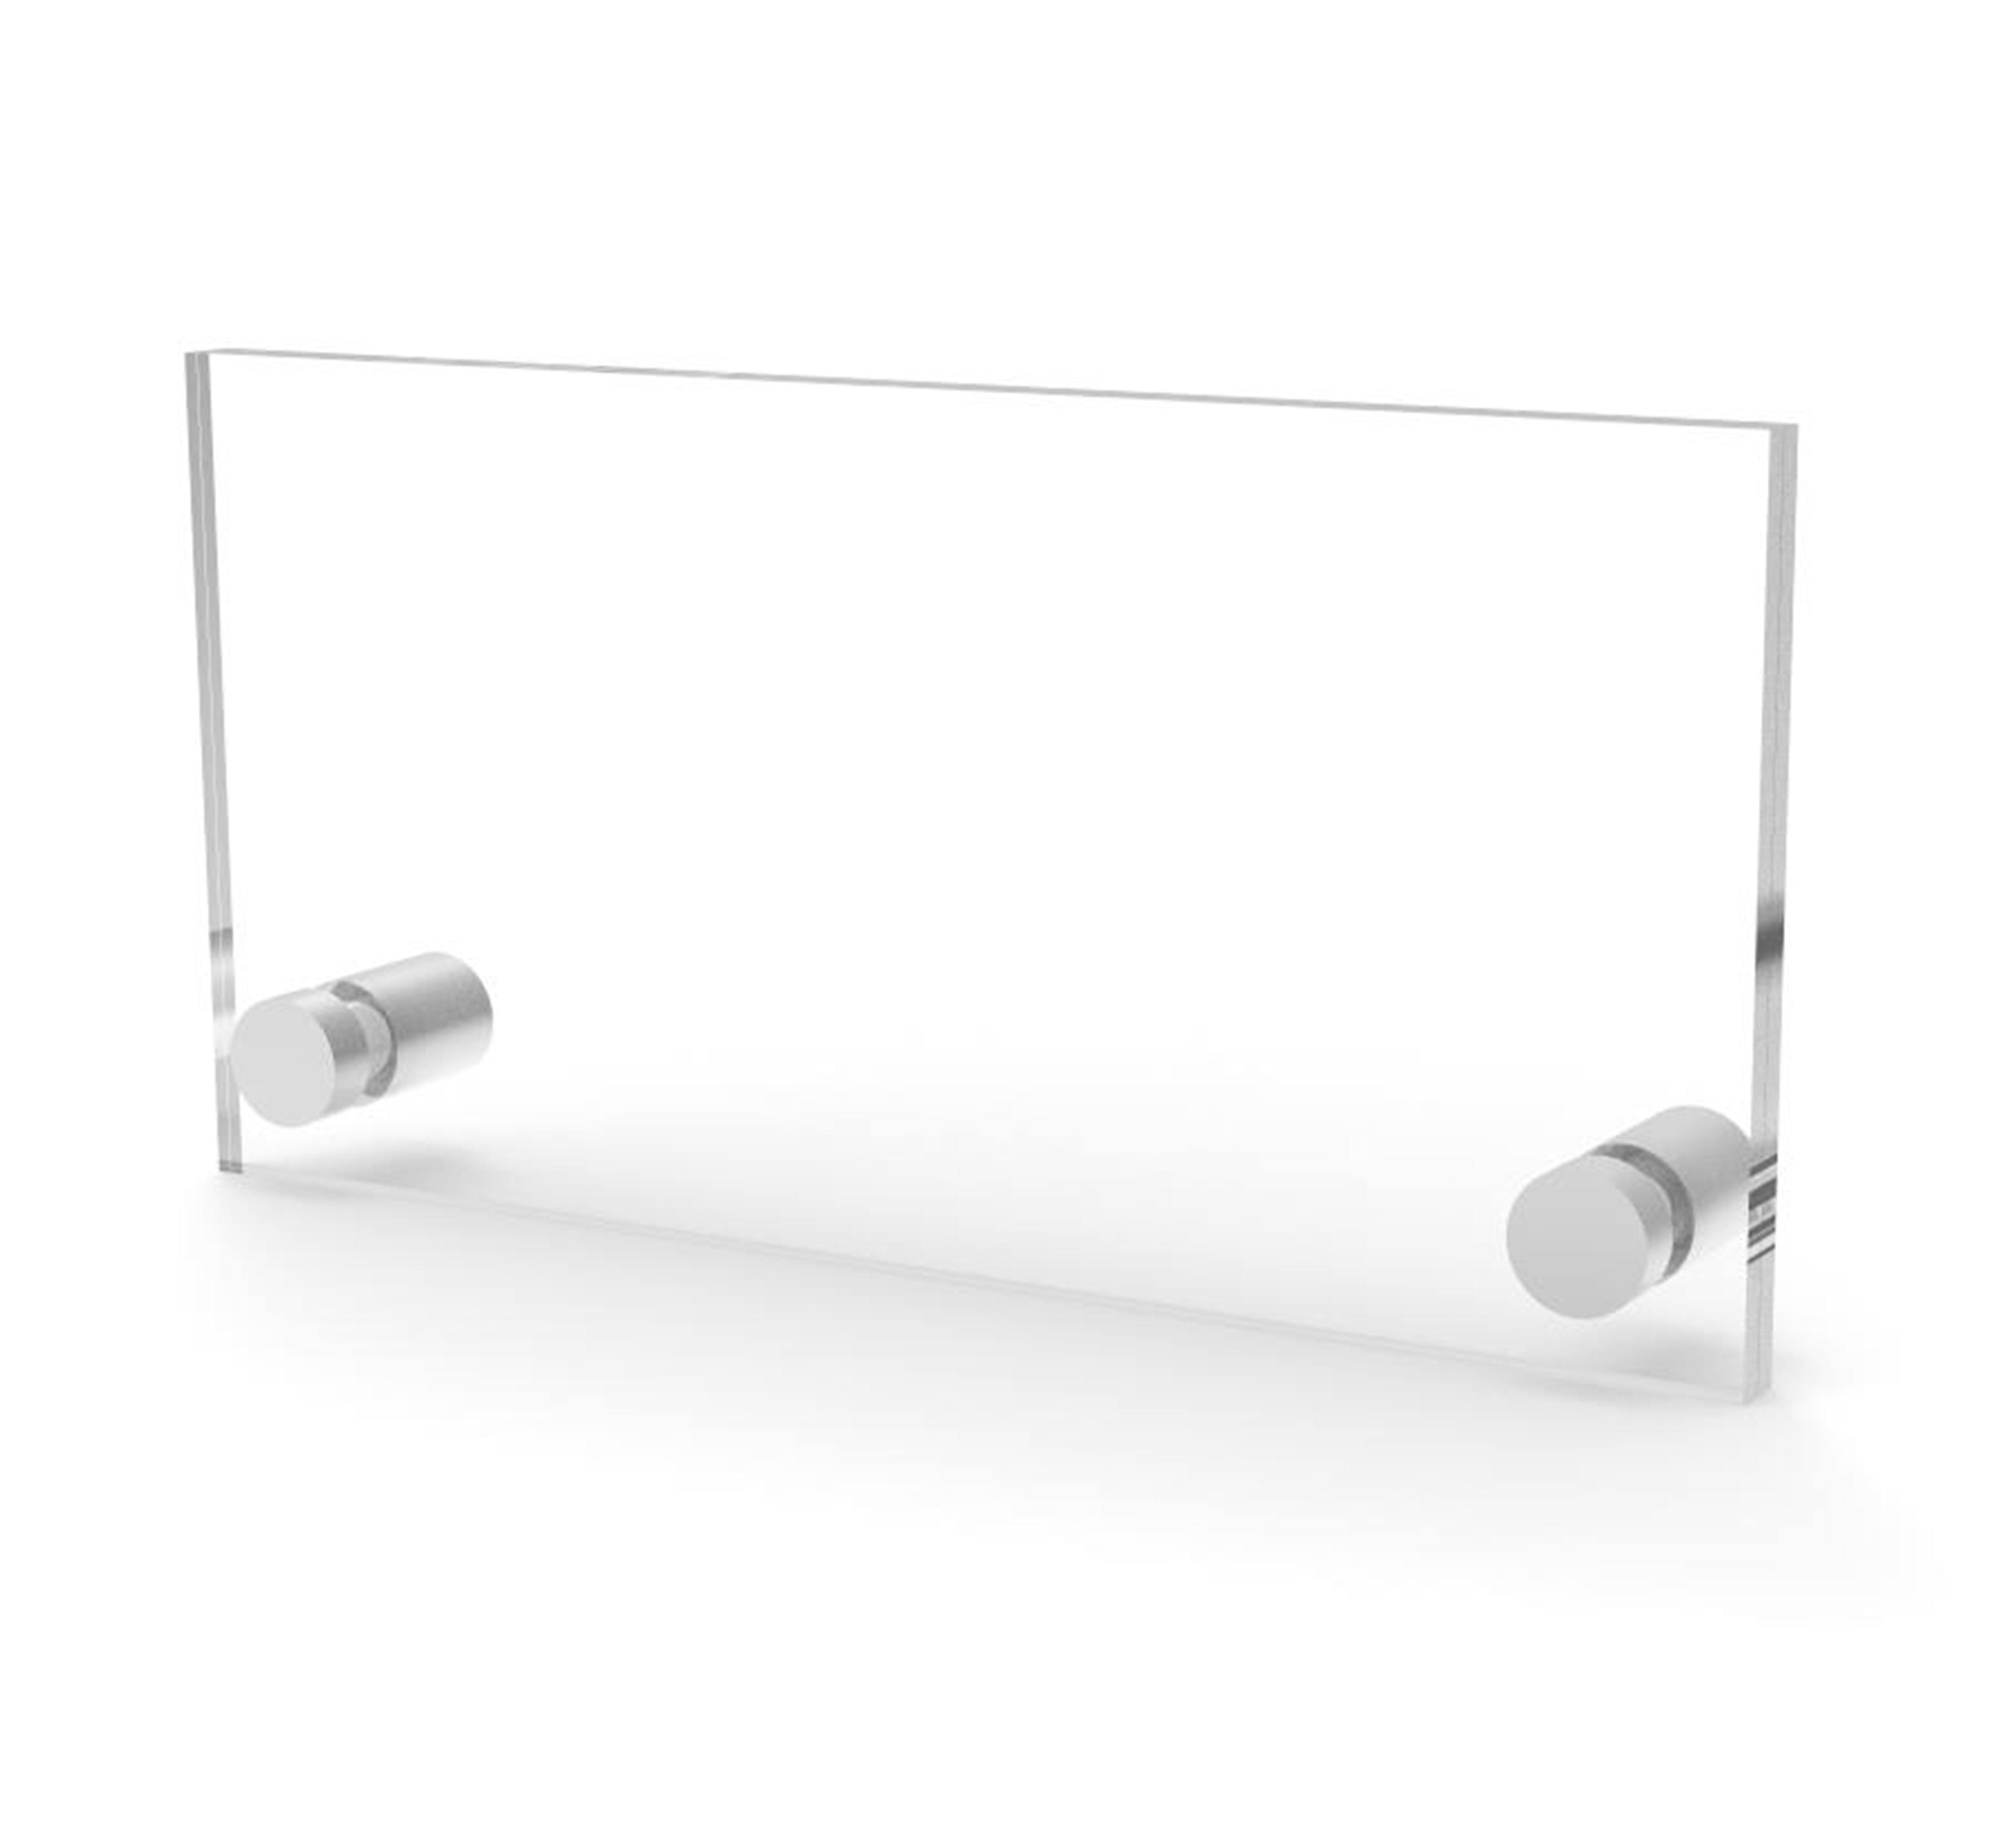 https://assets.wfcdn.com/im/35099584/compr-r85/1429/142909443/fixturedisplays-clear-sign-name-holder-plexiglass-3x6-6x3-wallmount-poster-frame-standoff-119884-36.jpg